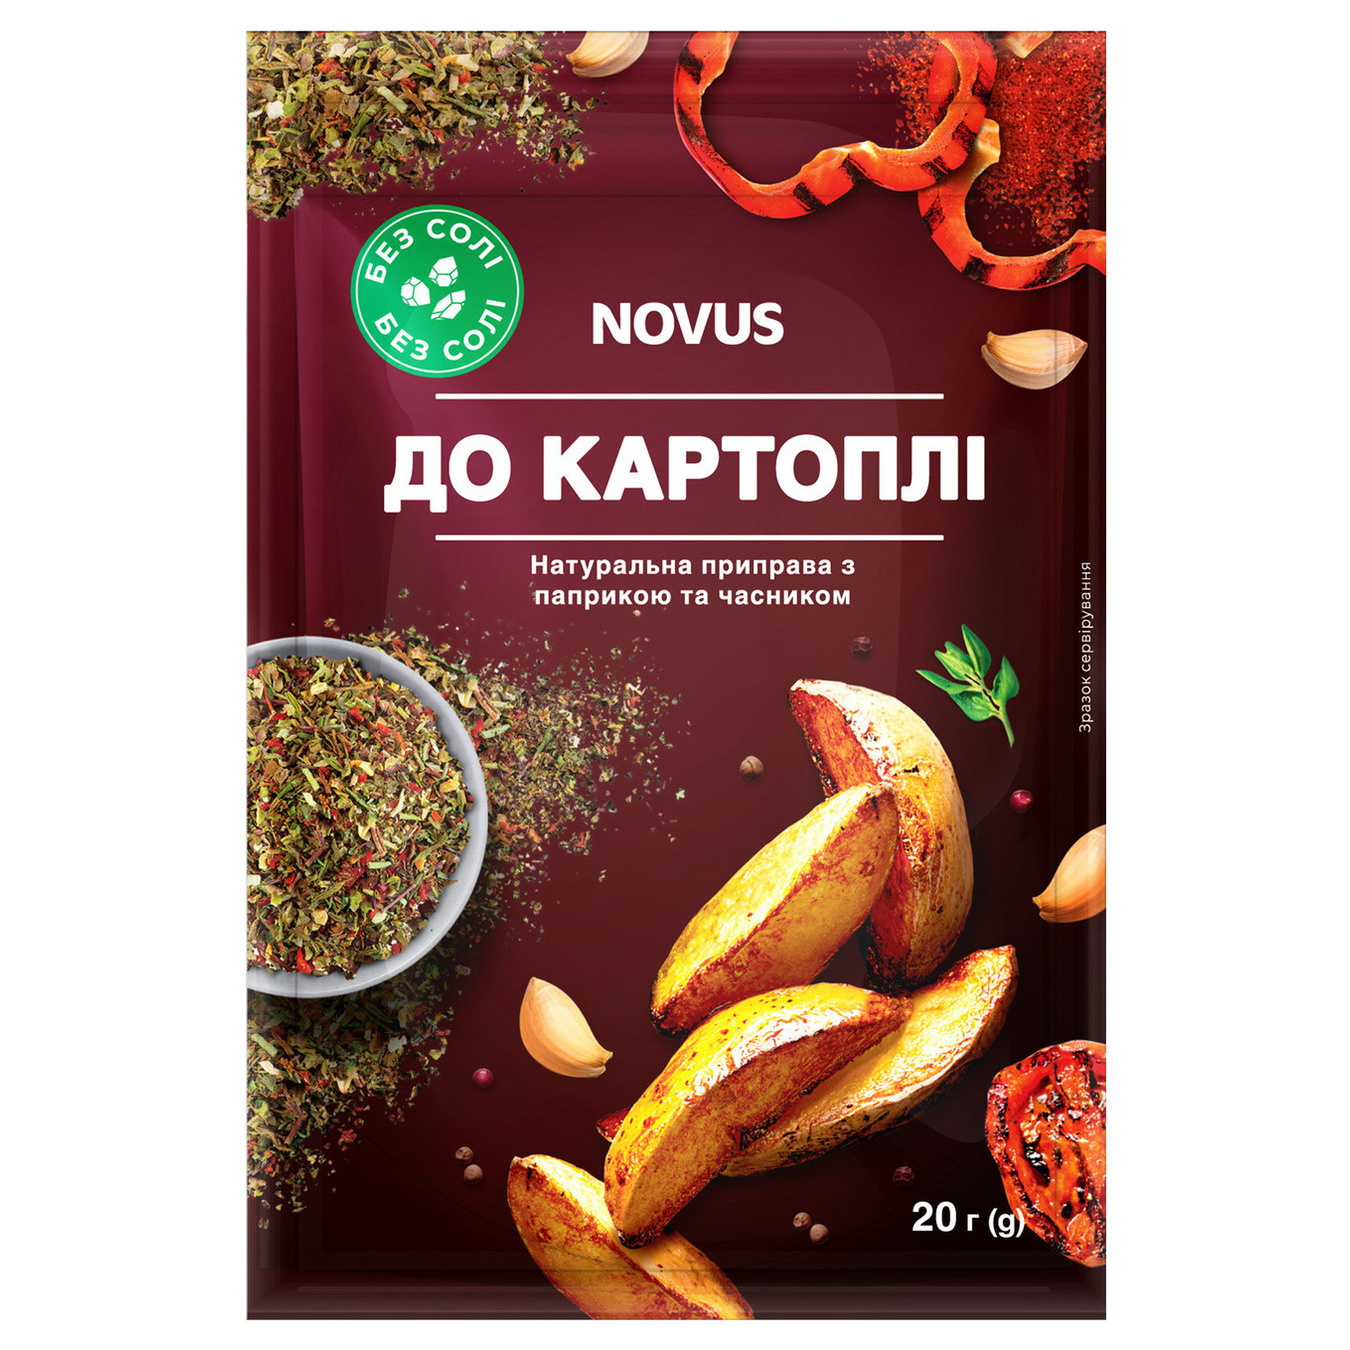 Приправа NOVUS натуральна без солі до картоплі з паприкою та часником 20г